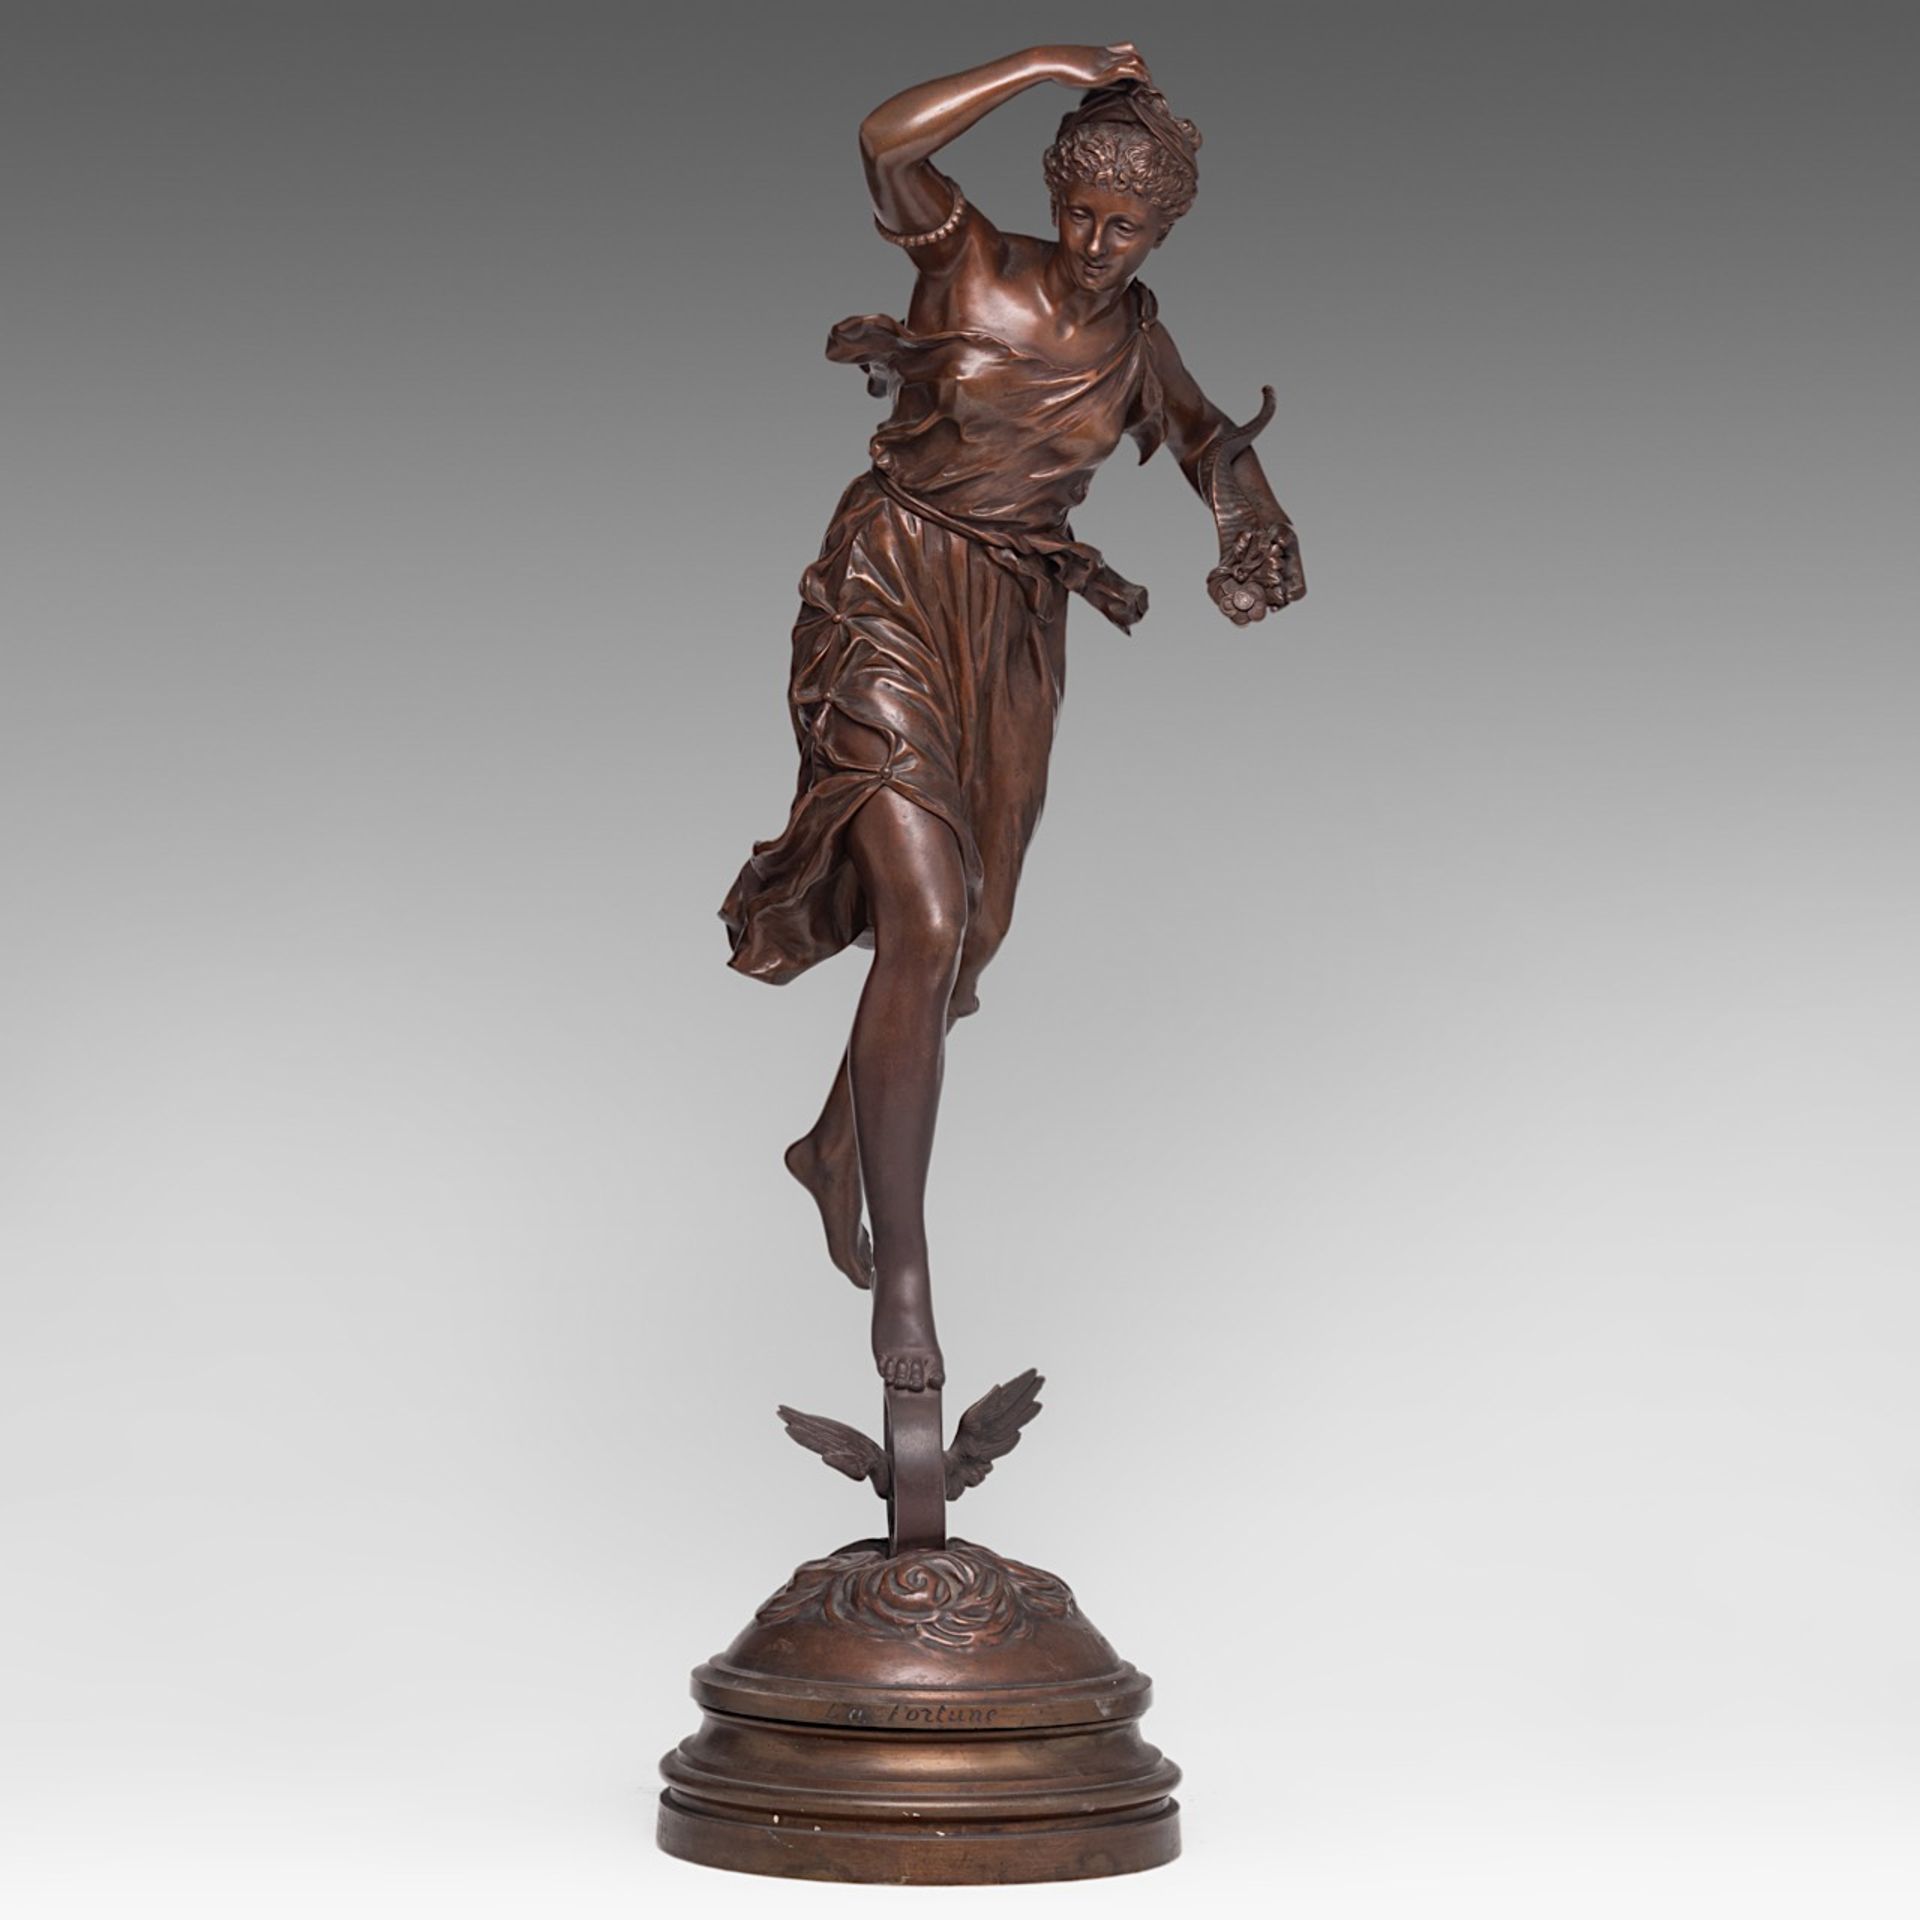 Ernest Rancoulet (1842-1918), 'La Fortune', patinated bronze, H 81 cm